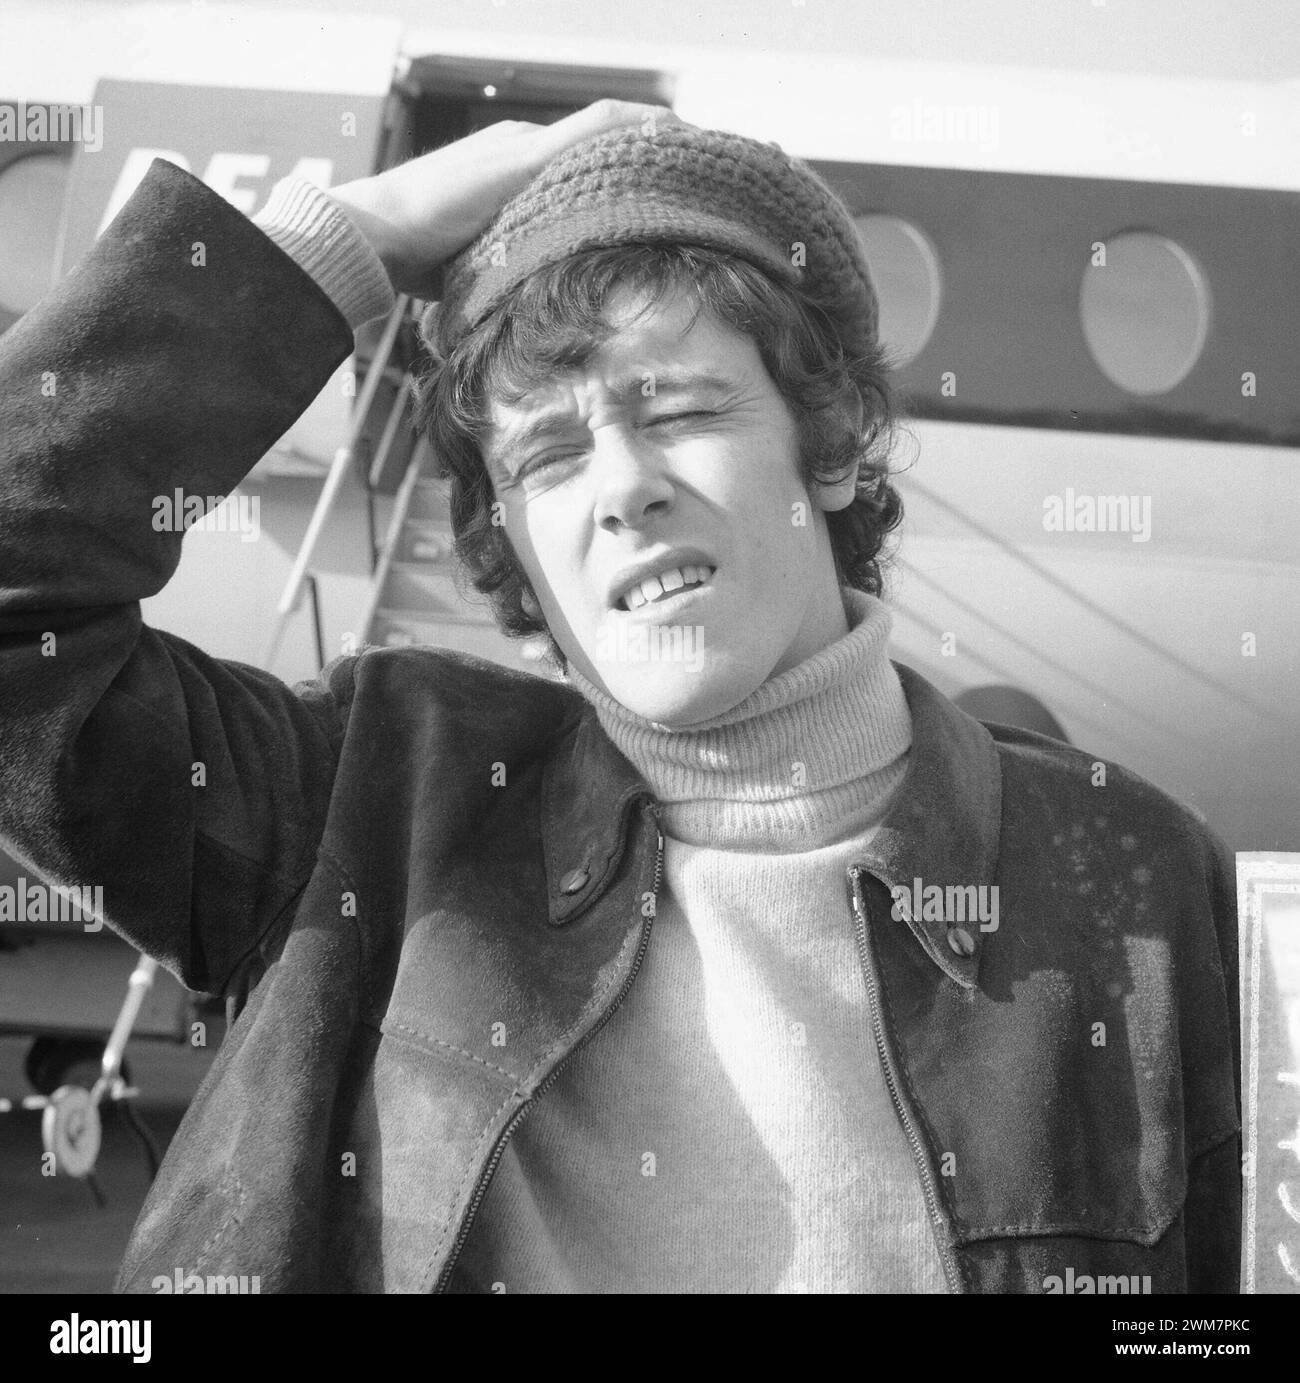 Februar 1966. Amsterdam, Niederlande. Porträt bei der Ankunft in Schiphol von Donavan. Schottischer Folk-Sänger auf einem Besuch in den Niederlanden. Stockfoto